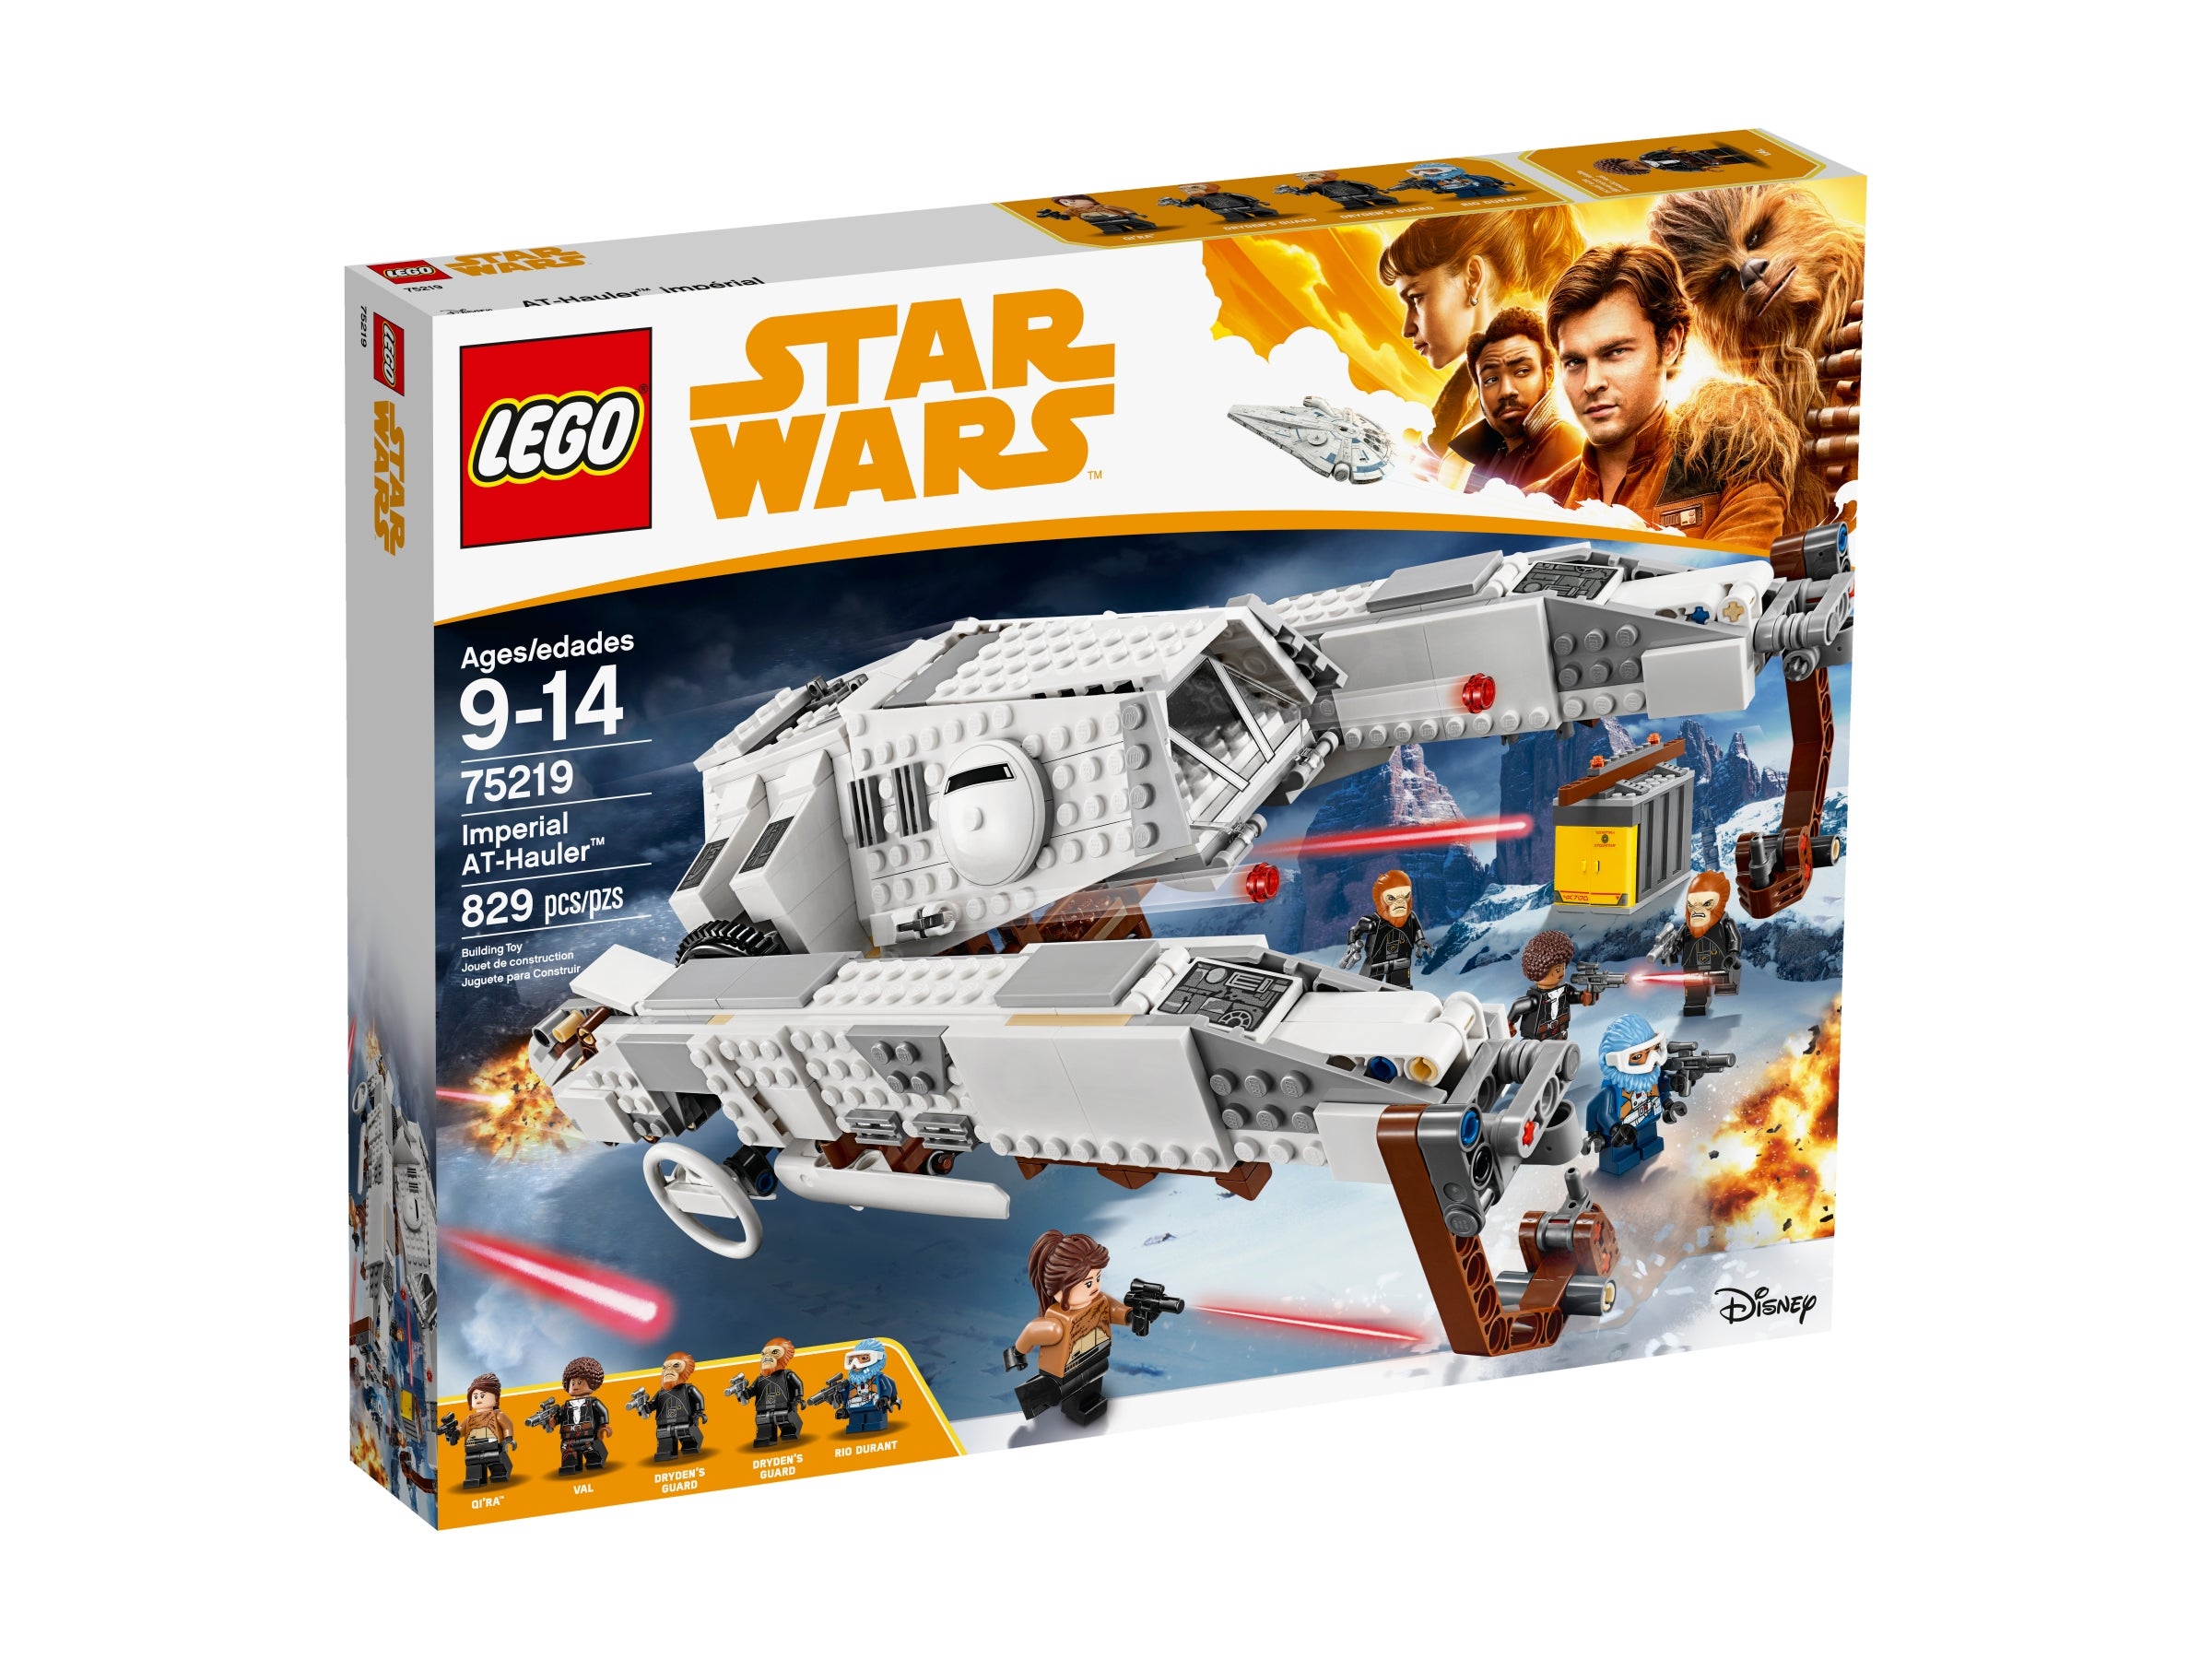 Lego Star Wars imperial at-hauler 75219 nuevo sin abrir de colección OVP